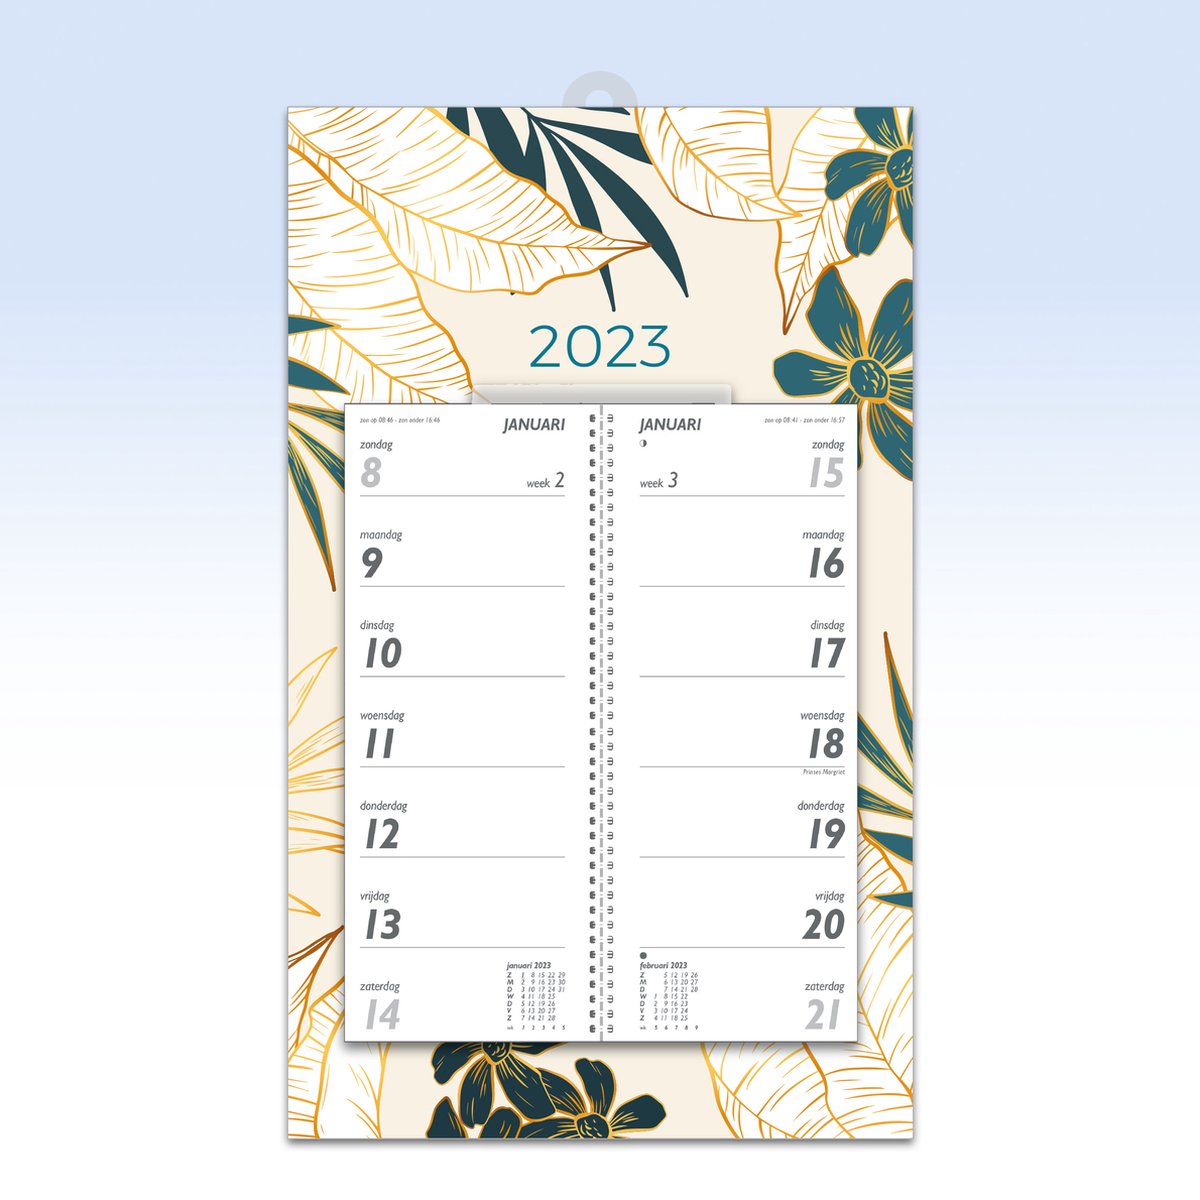 Omleg Weekkalender 2023 op schild - 20x33 cm met schuifhanger - Weekkalender met 2 weken overzicht - beginnend op zondag